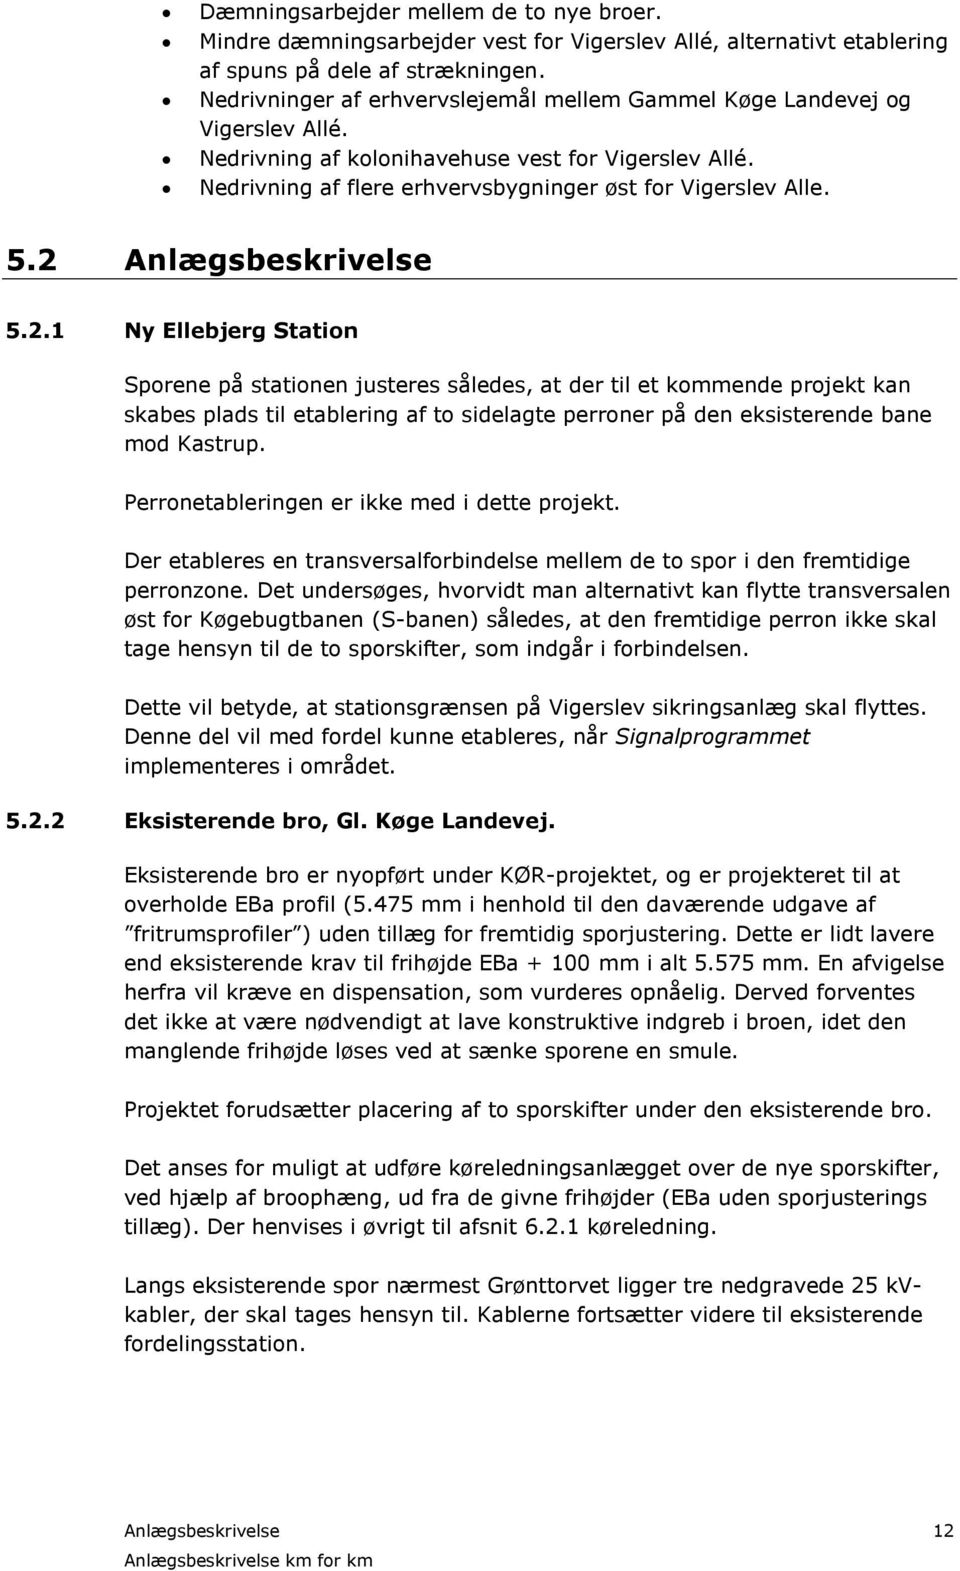 2 Anlægsbeskrivelse 5.2.1 Ny Ellebjerg Station Sporene på stationen justeres således, at der til et kommende projekt kan skabes plads til etablering af to sidelagte perroner på den eksisterende bane mod Kastrup.